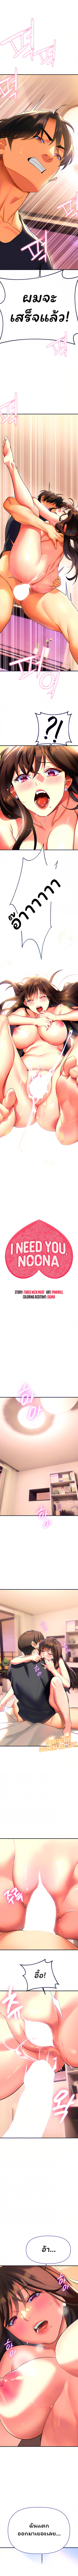 I Need You, Noona